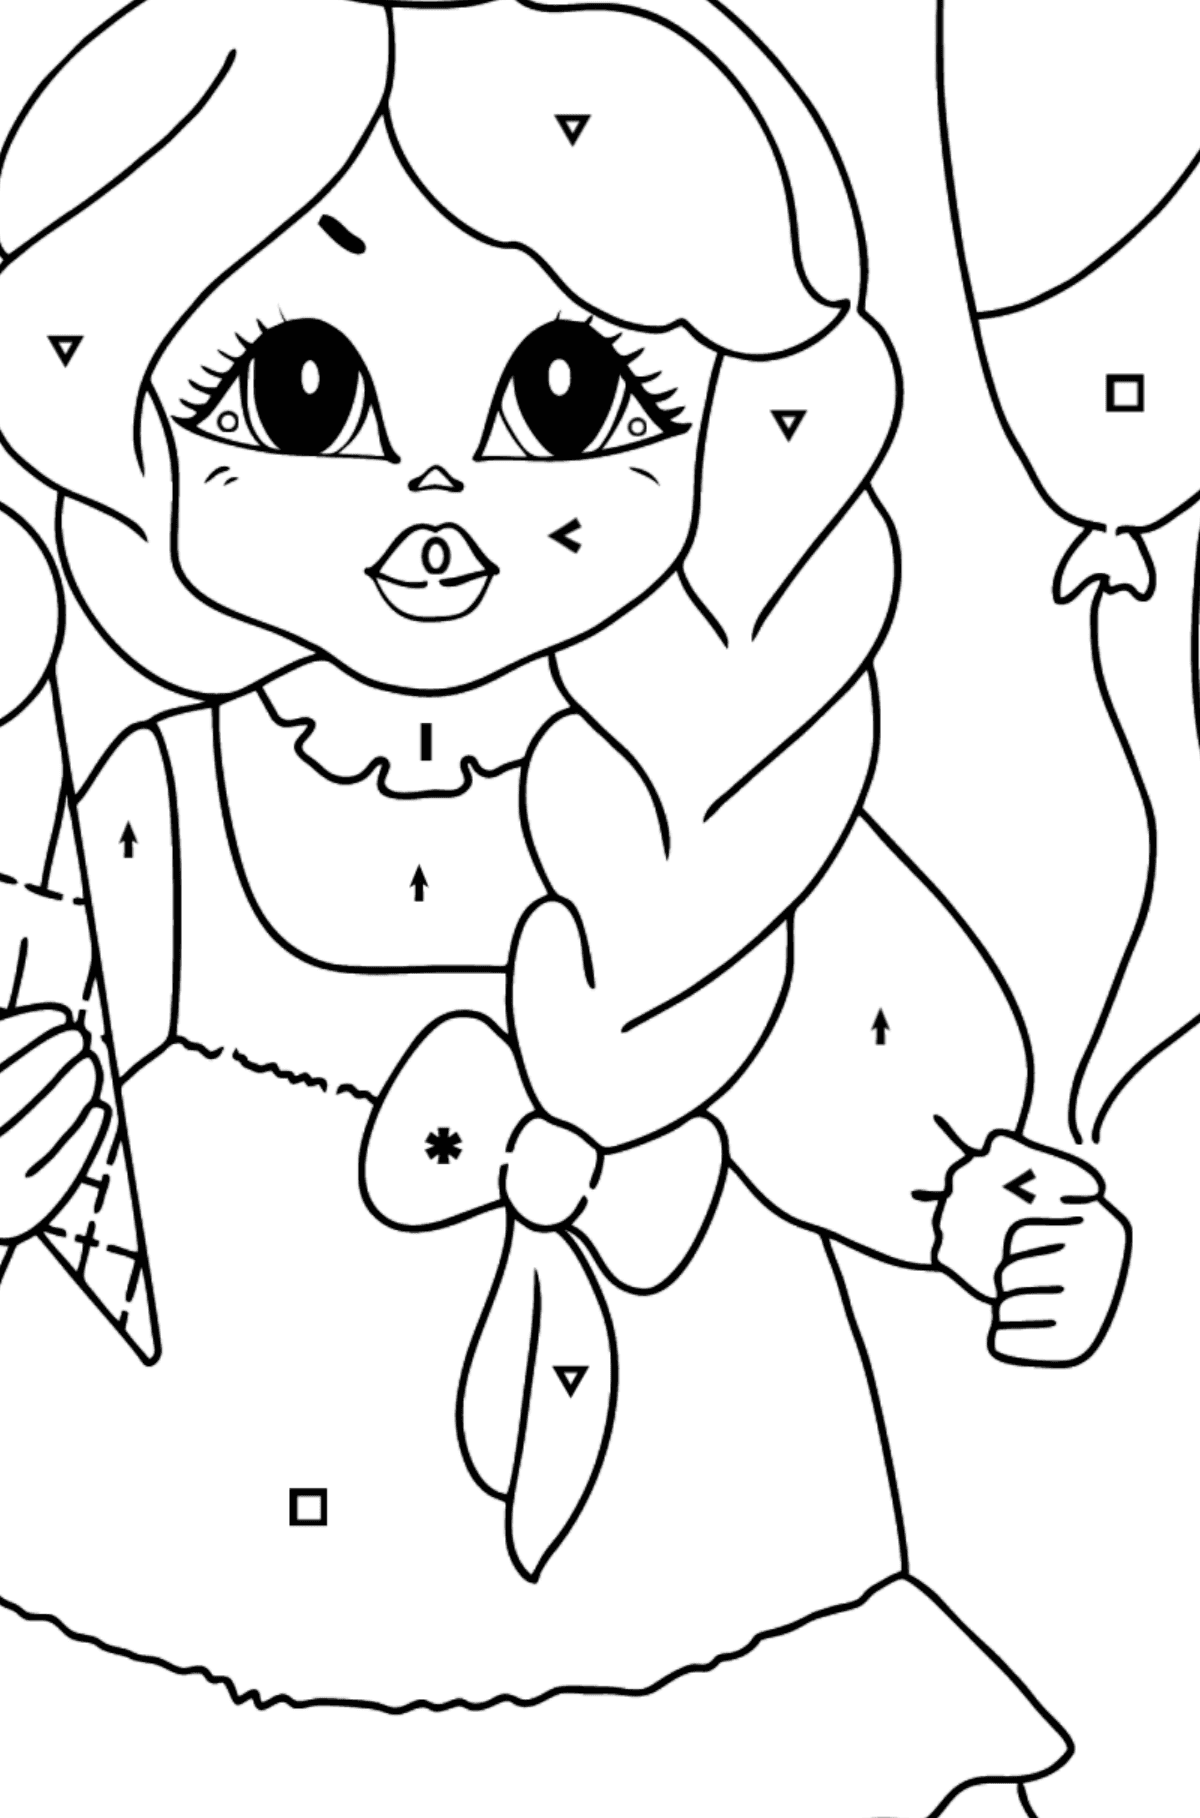 Dibujo para Colorear - Una Princesa con un Helado - Colorear por Símbolos para Niños